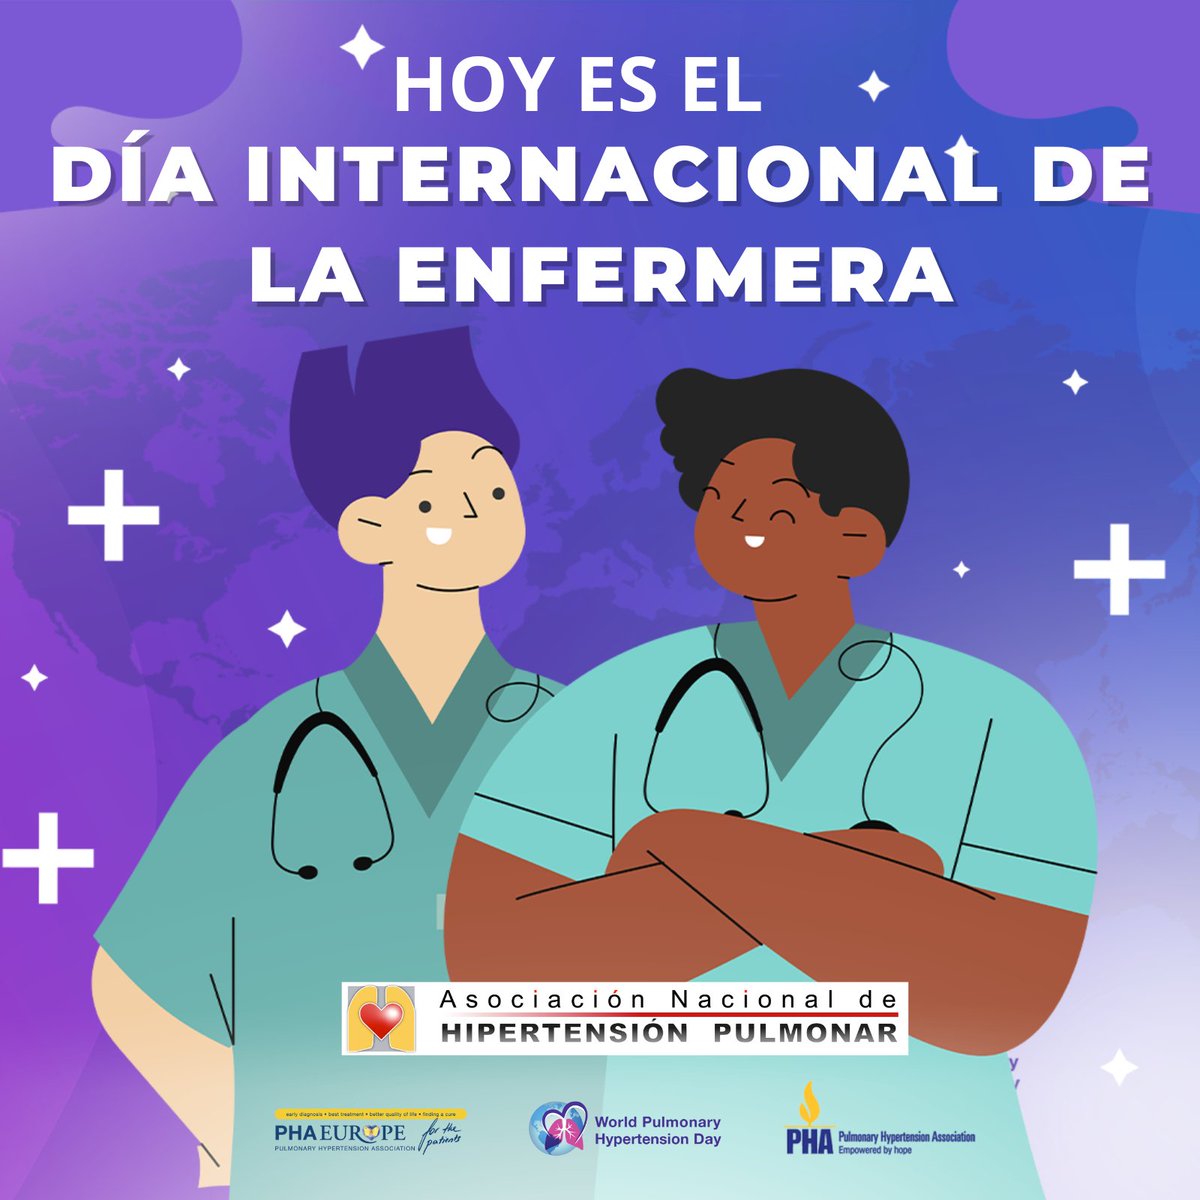 Hoy #DíaInternacionaldelaEnfermería, desde la ANHP agradecemos a todas las #enfermeras y #enfermeros que prestan cuidados y atención a pacientes que luchan contra la #hipertensiónpulmonar y les acompañan día a día. Gracias por vuestra labor que marca la diferencia en sus vidas.